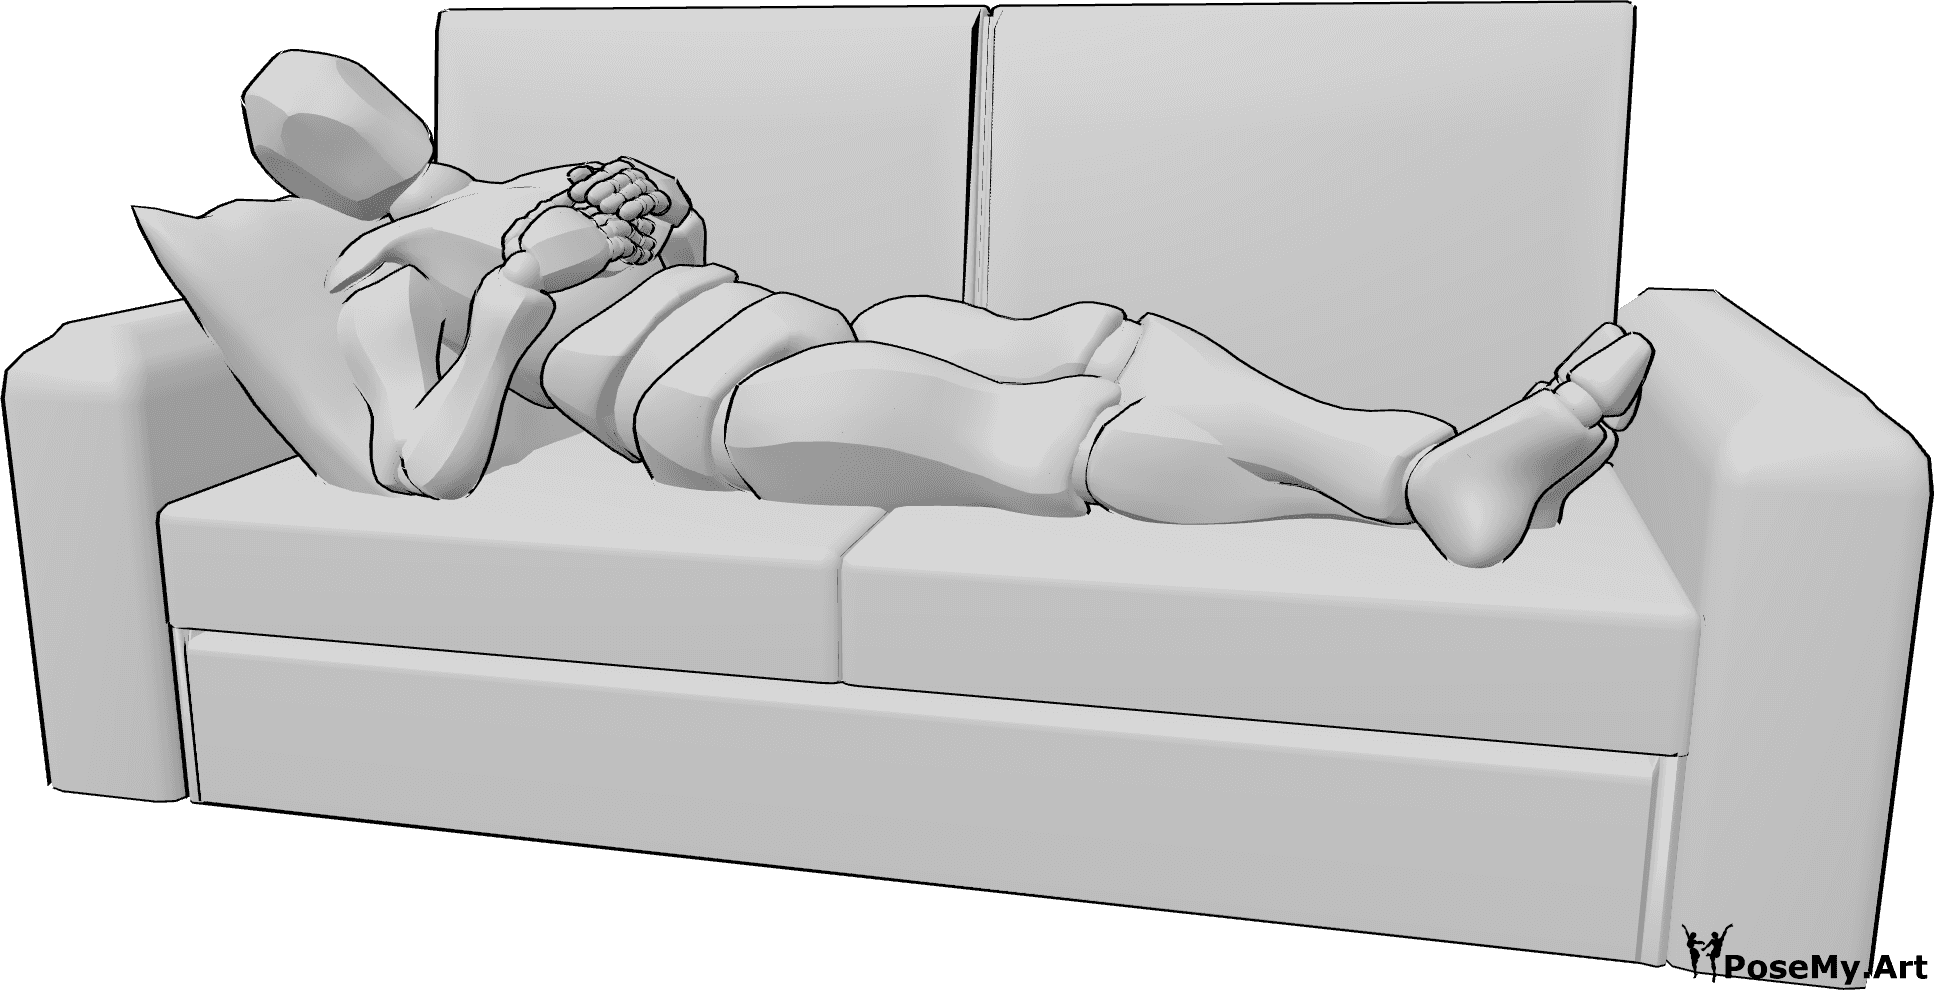 Référence des poses- Homme allongé sur un canapé - L'homme est allongé sur le canapé, les jambes croisées, les mains posées sur la poitrine et le regard tourné vers la droite.